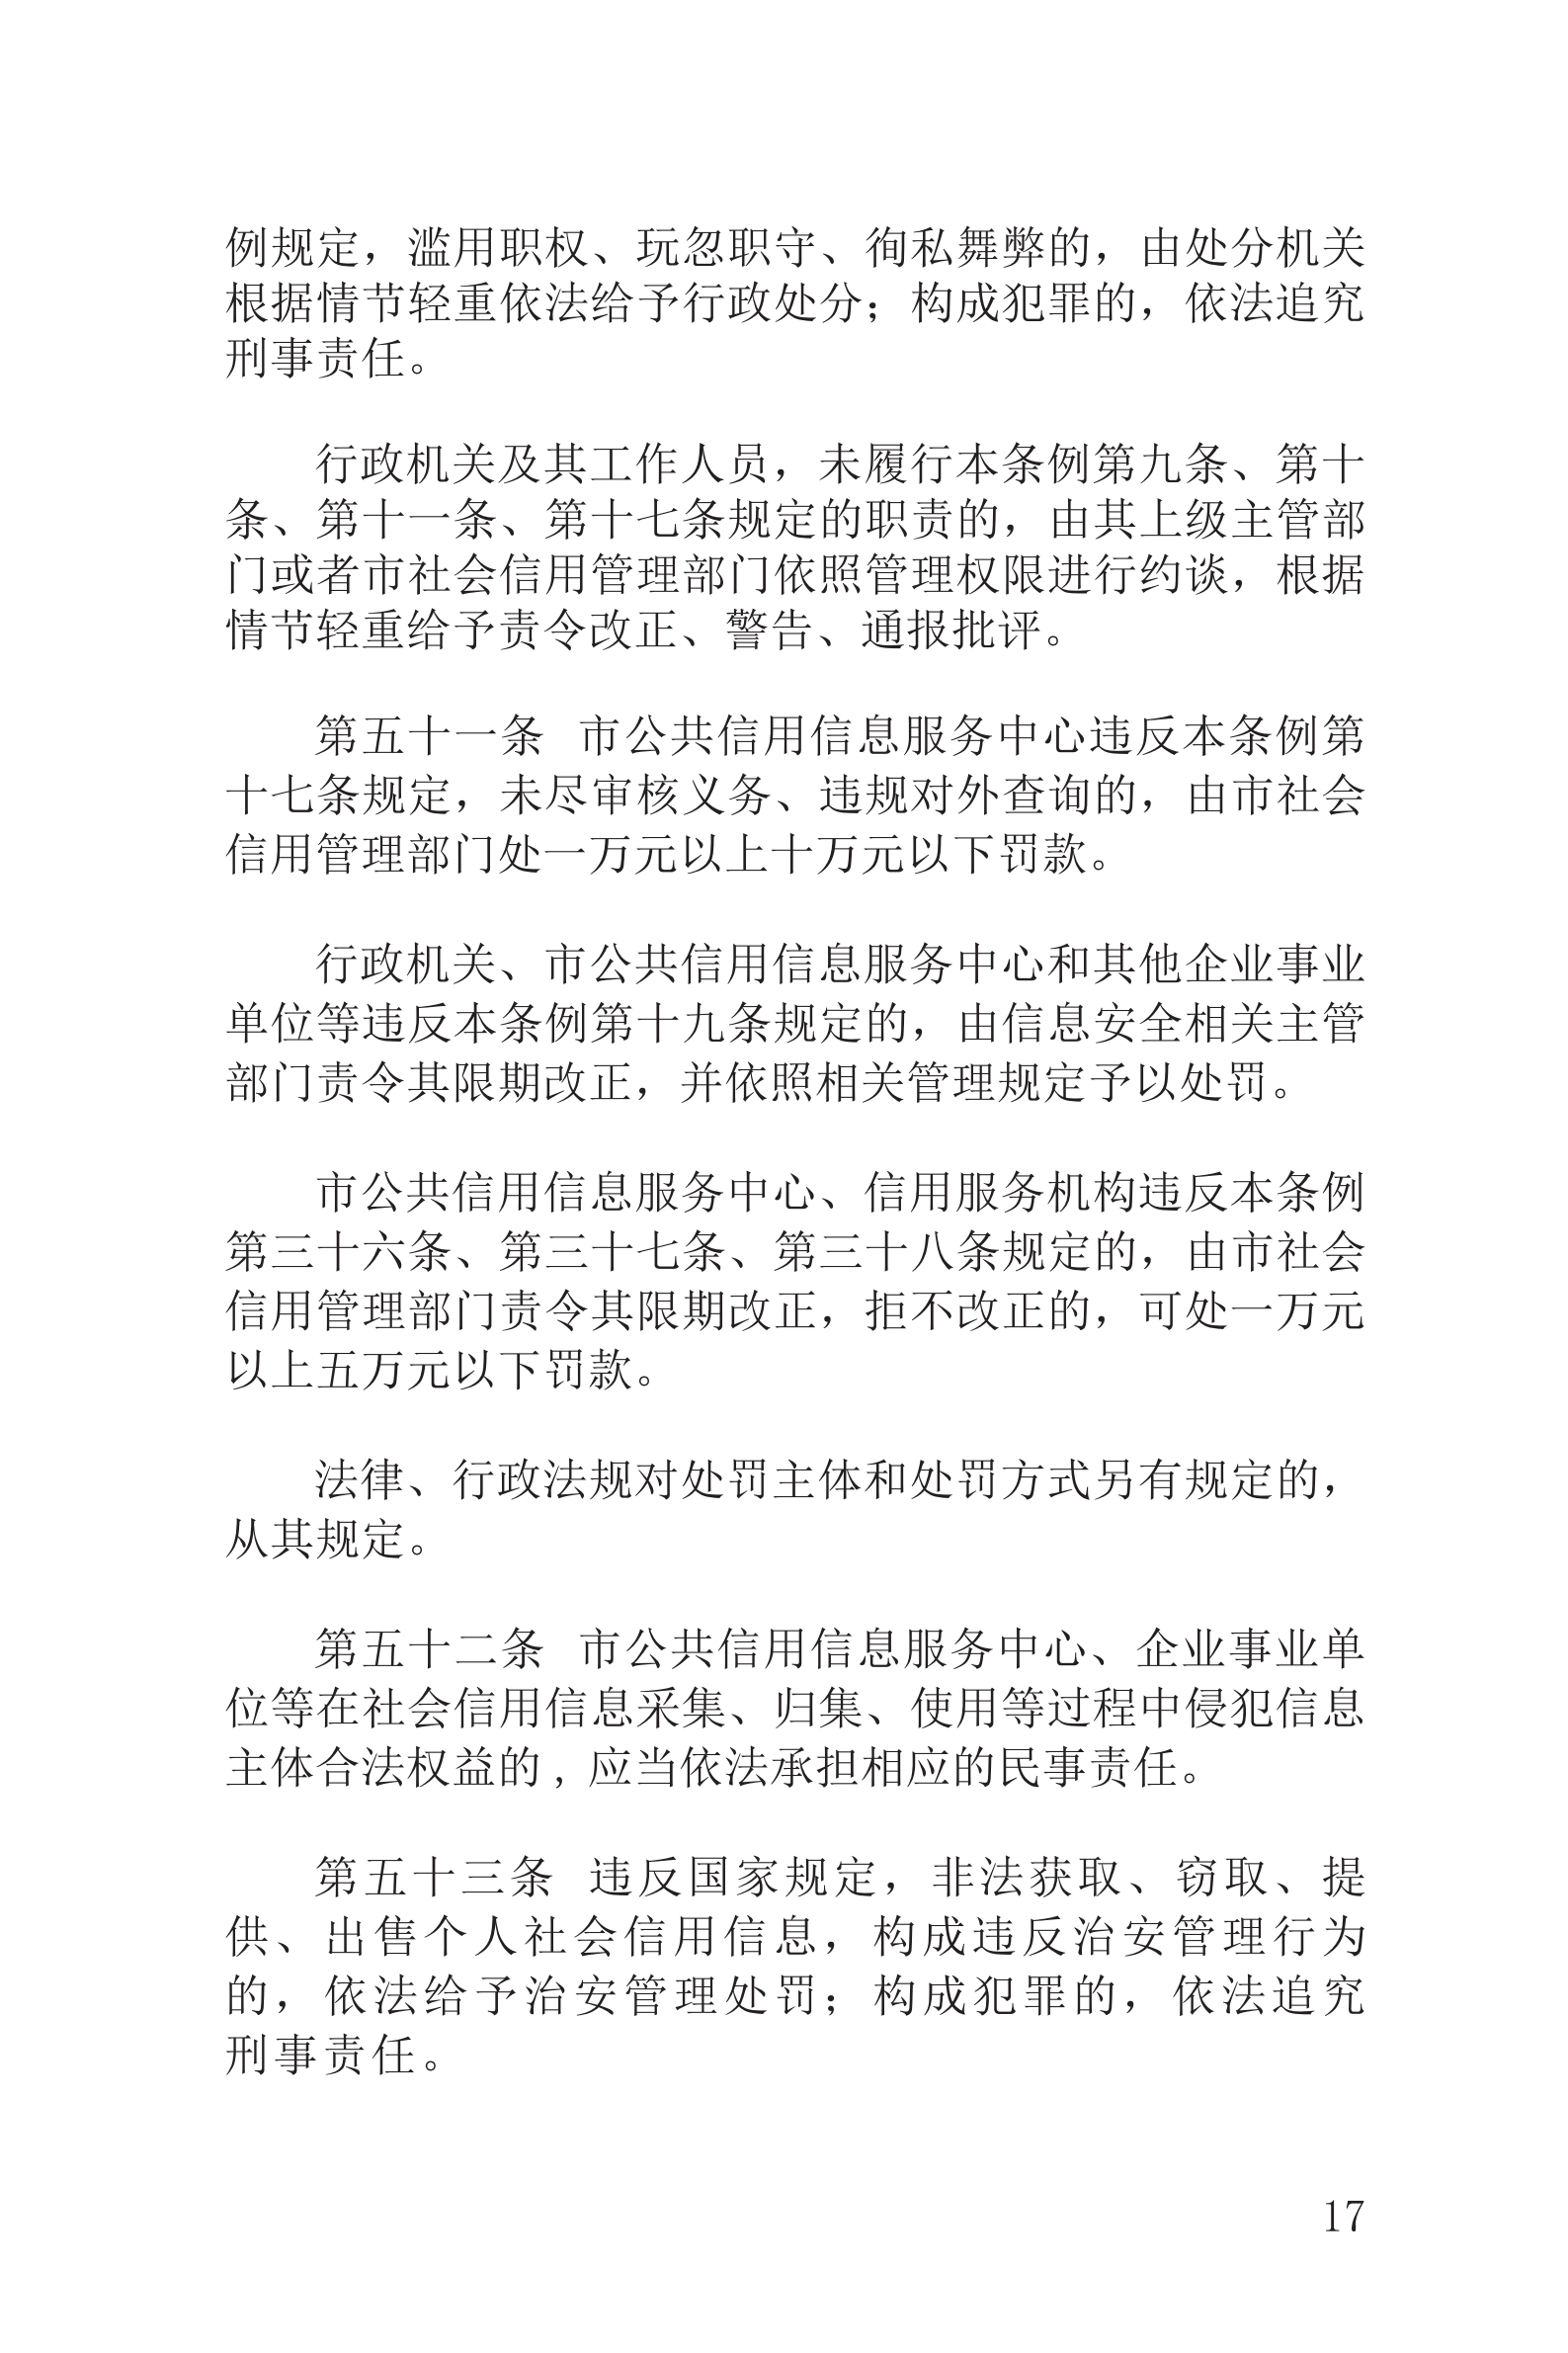 上海市社会信用条例_18.png